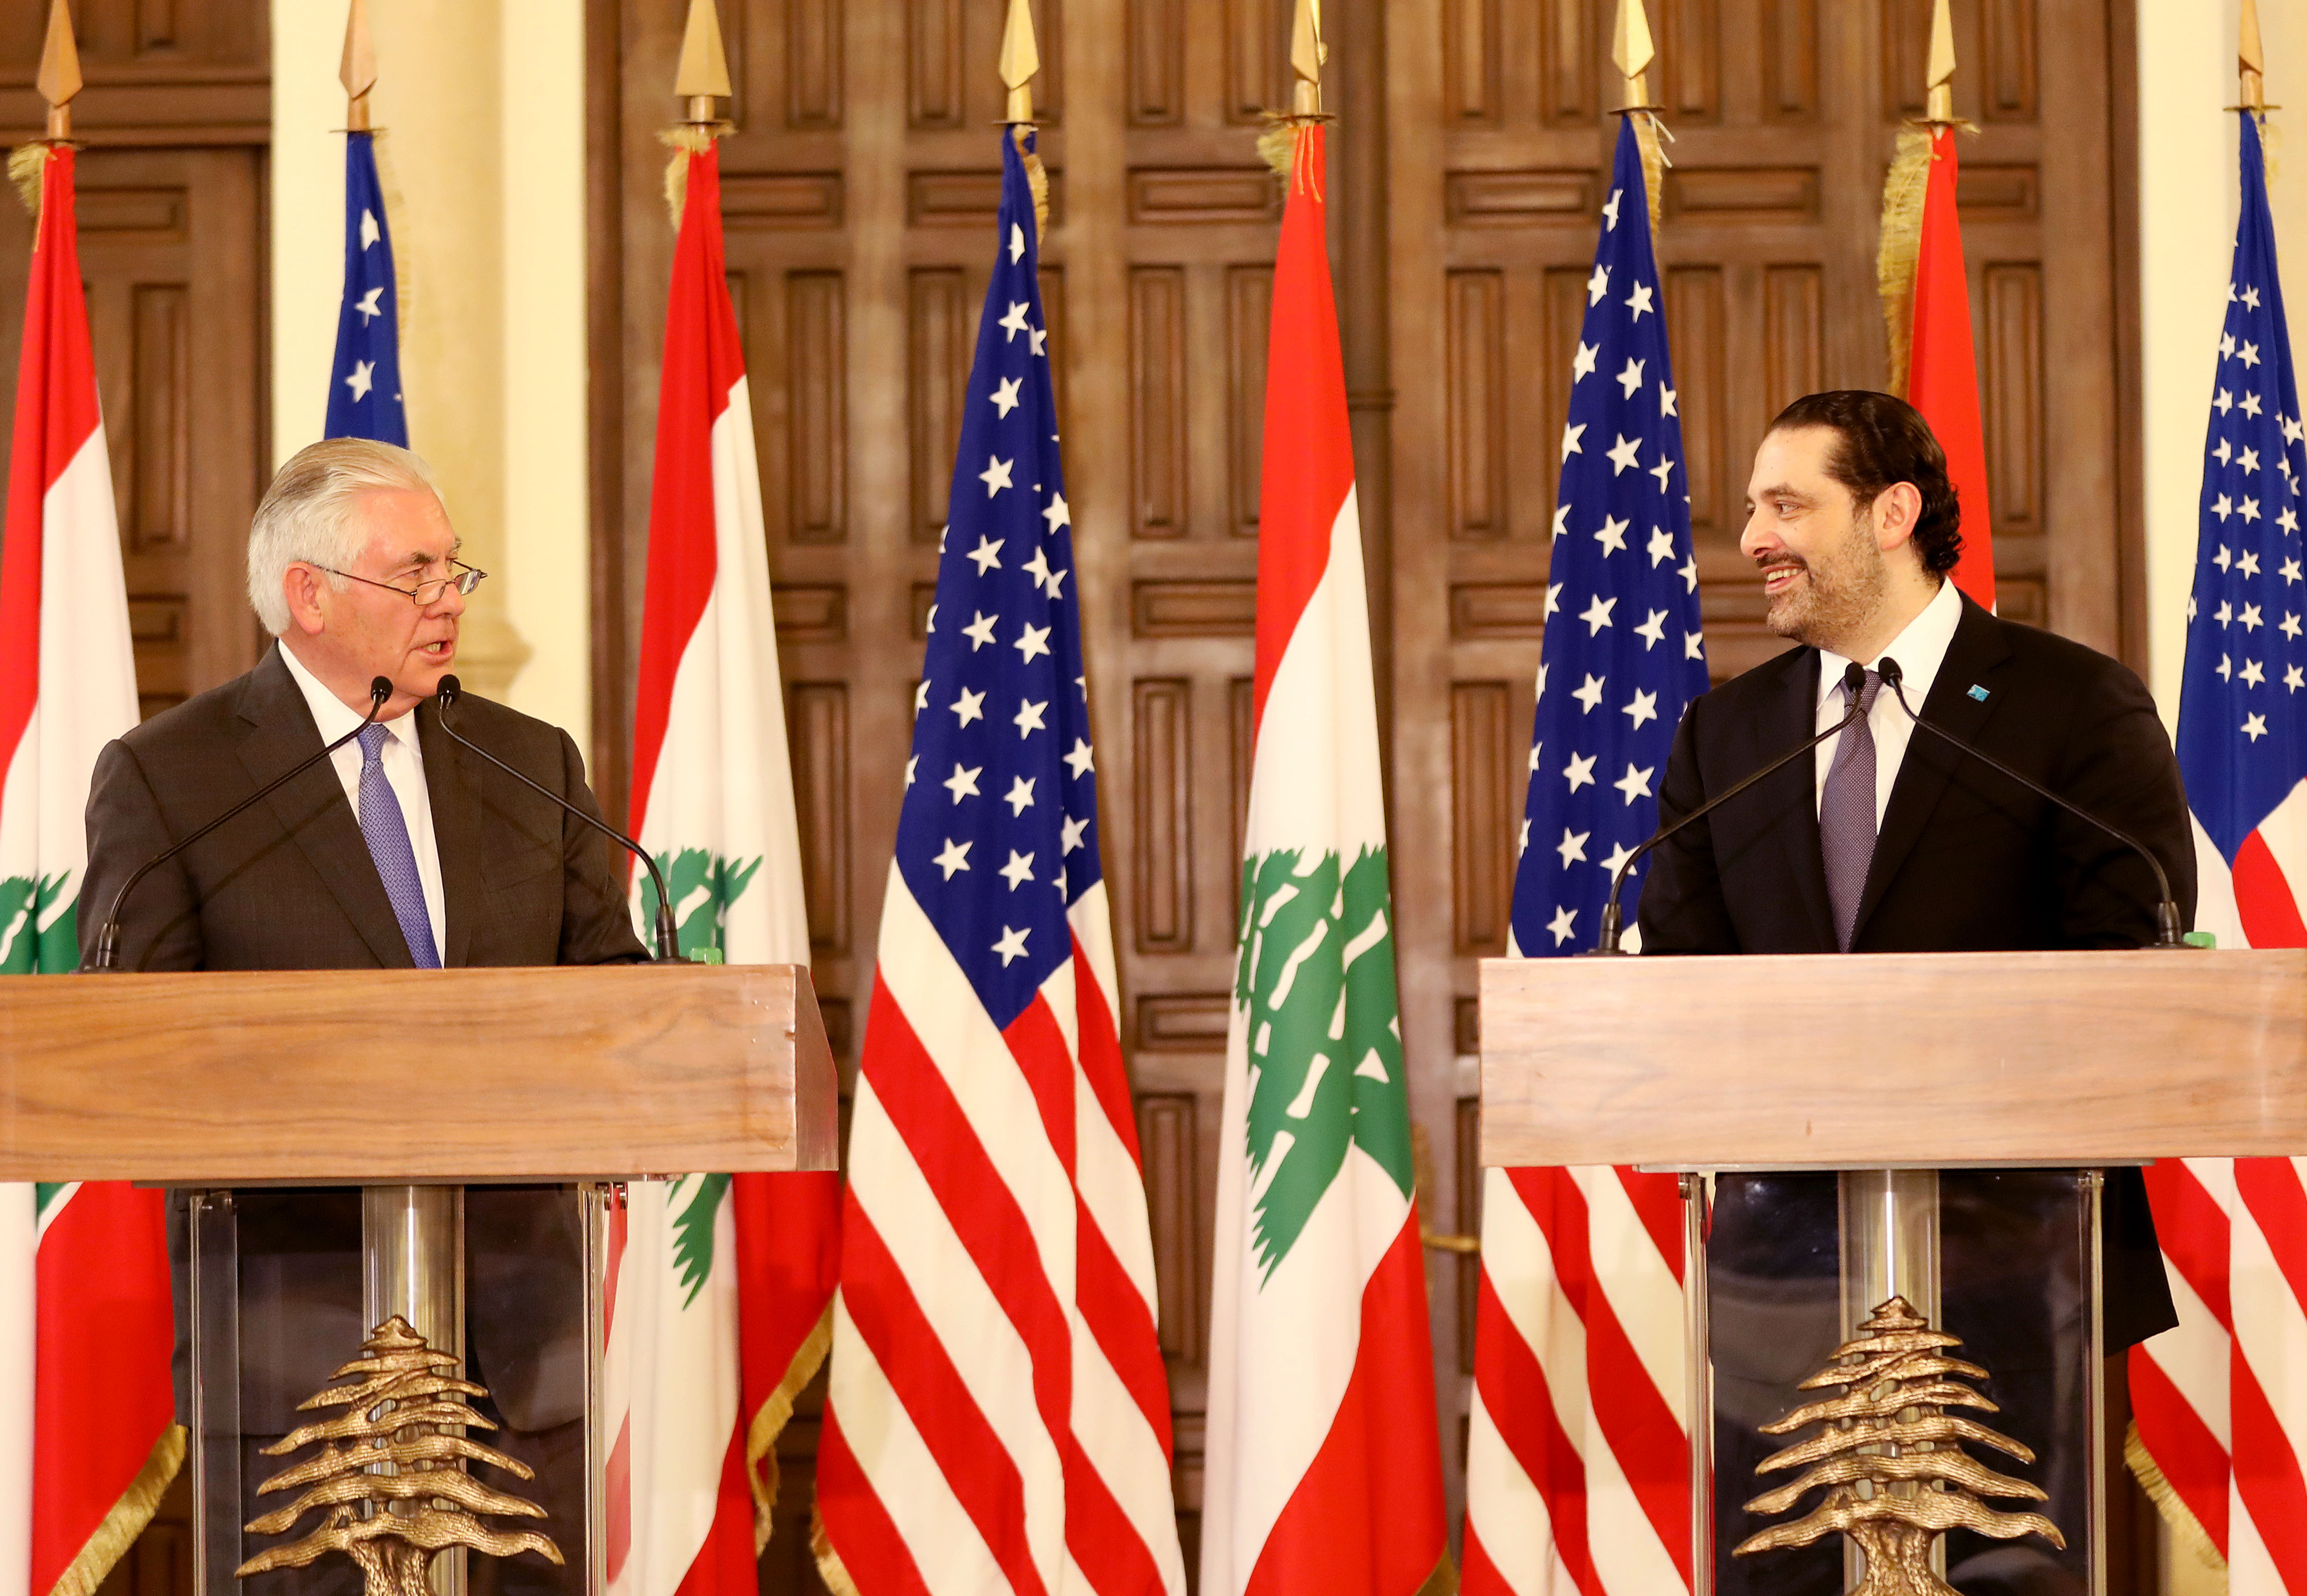 رئيس وزراء لبنان سعد الحريري ووزير الخارجية الامريكي ريكس تيلرسون في مؤتمر صحفي مشترك في بيروت